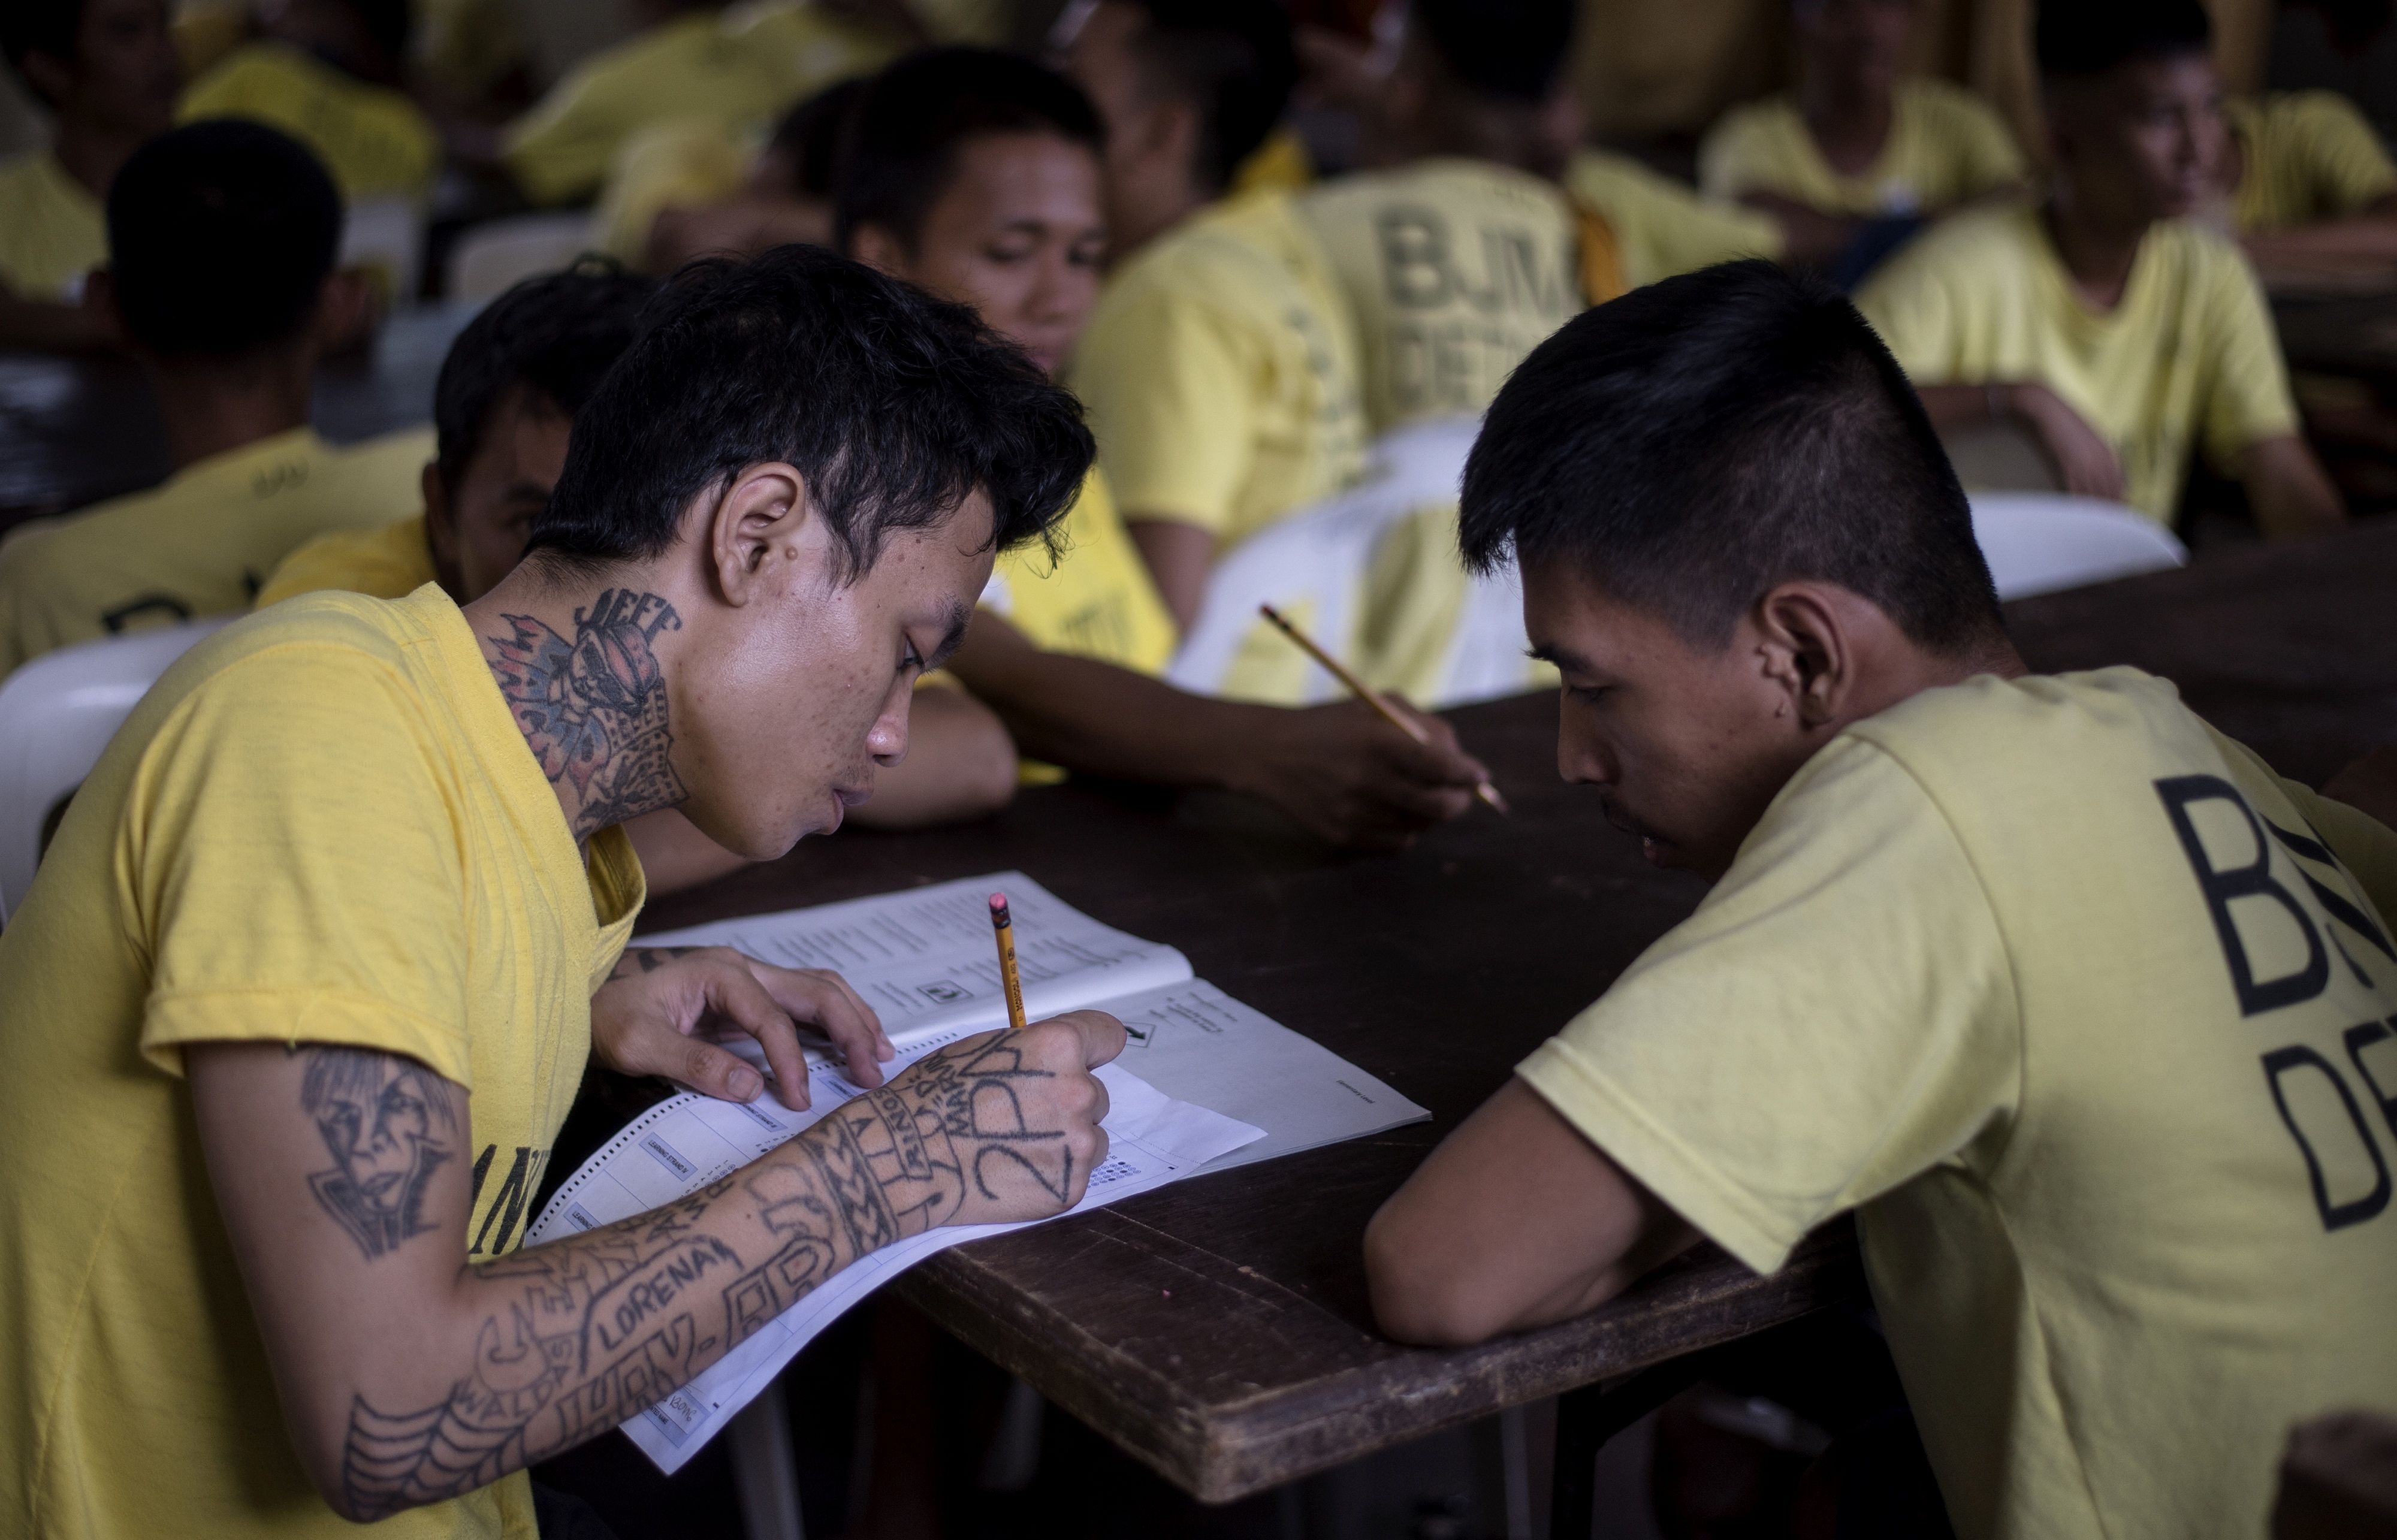 سجناء يؤدون امتحانات التعليم البديل فى الفلبين